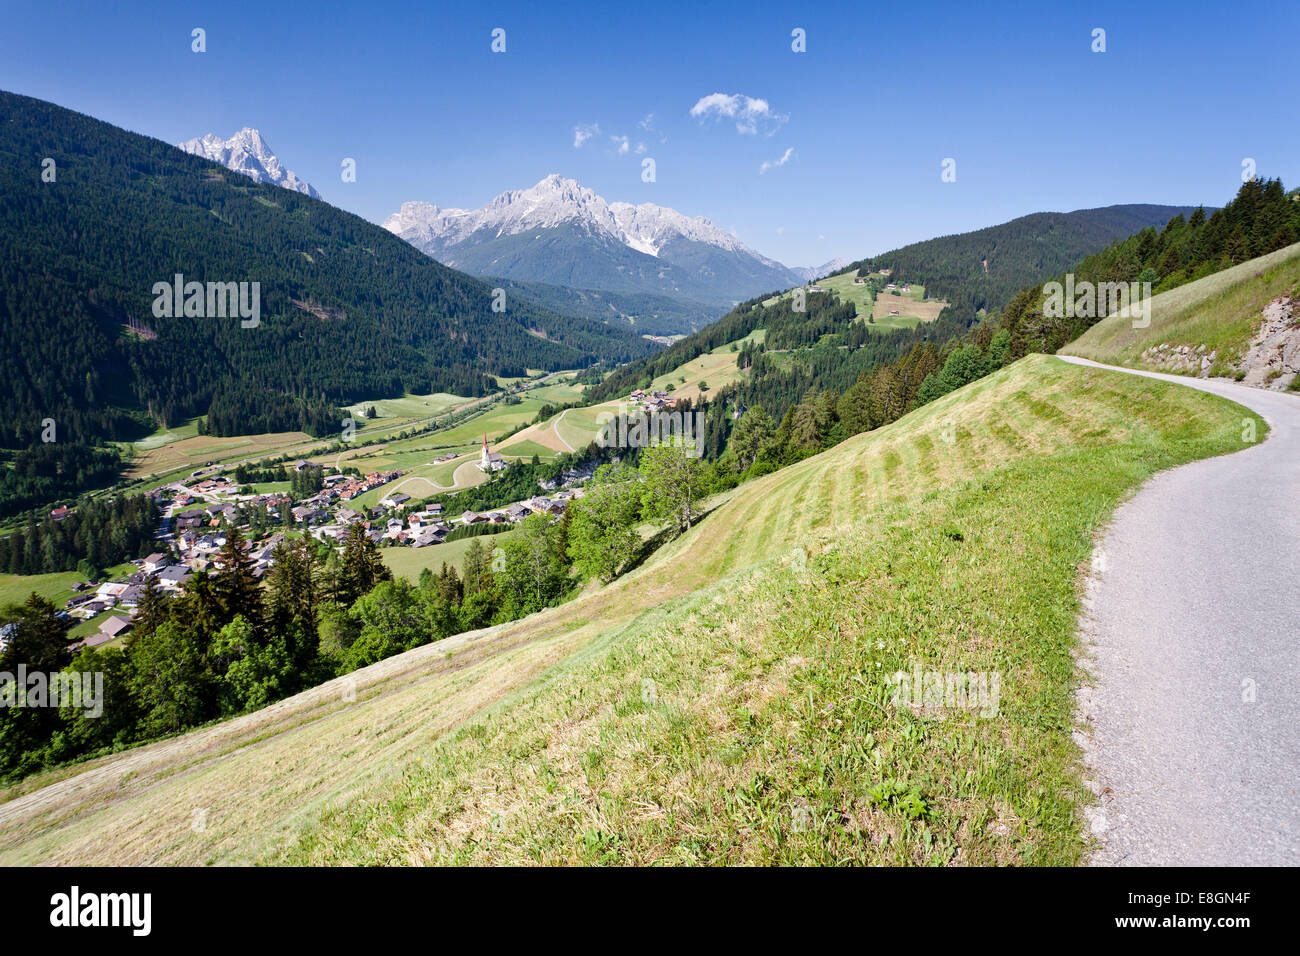 Villaggio di Winnebach in Alta Pusteria al confine con Austria, Valle San Silvestro a valle sulla destra, Haunold e Foto Stock